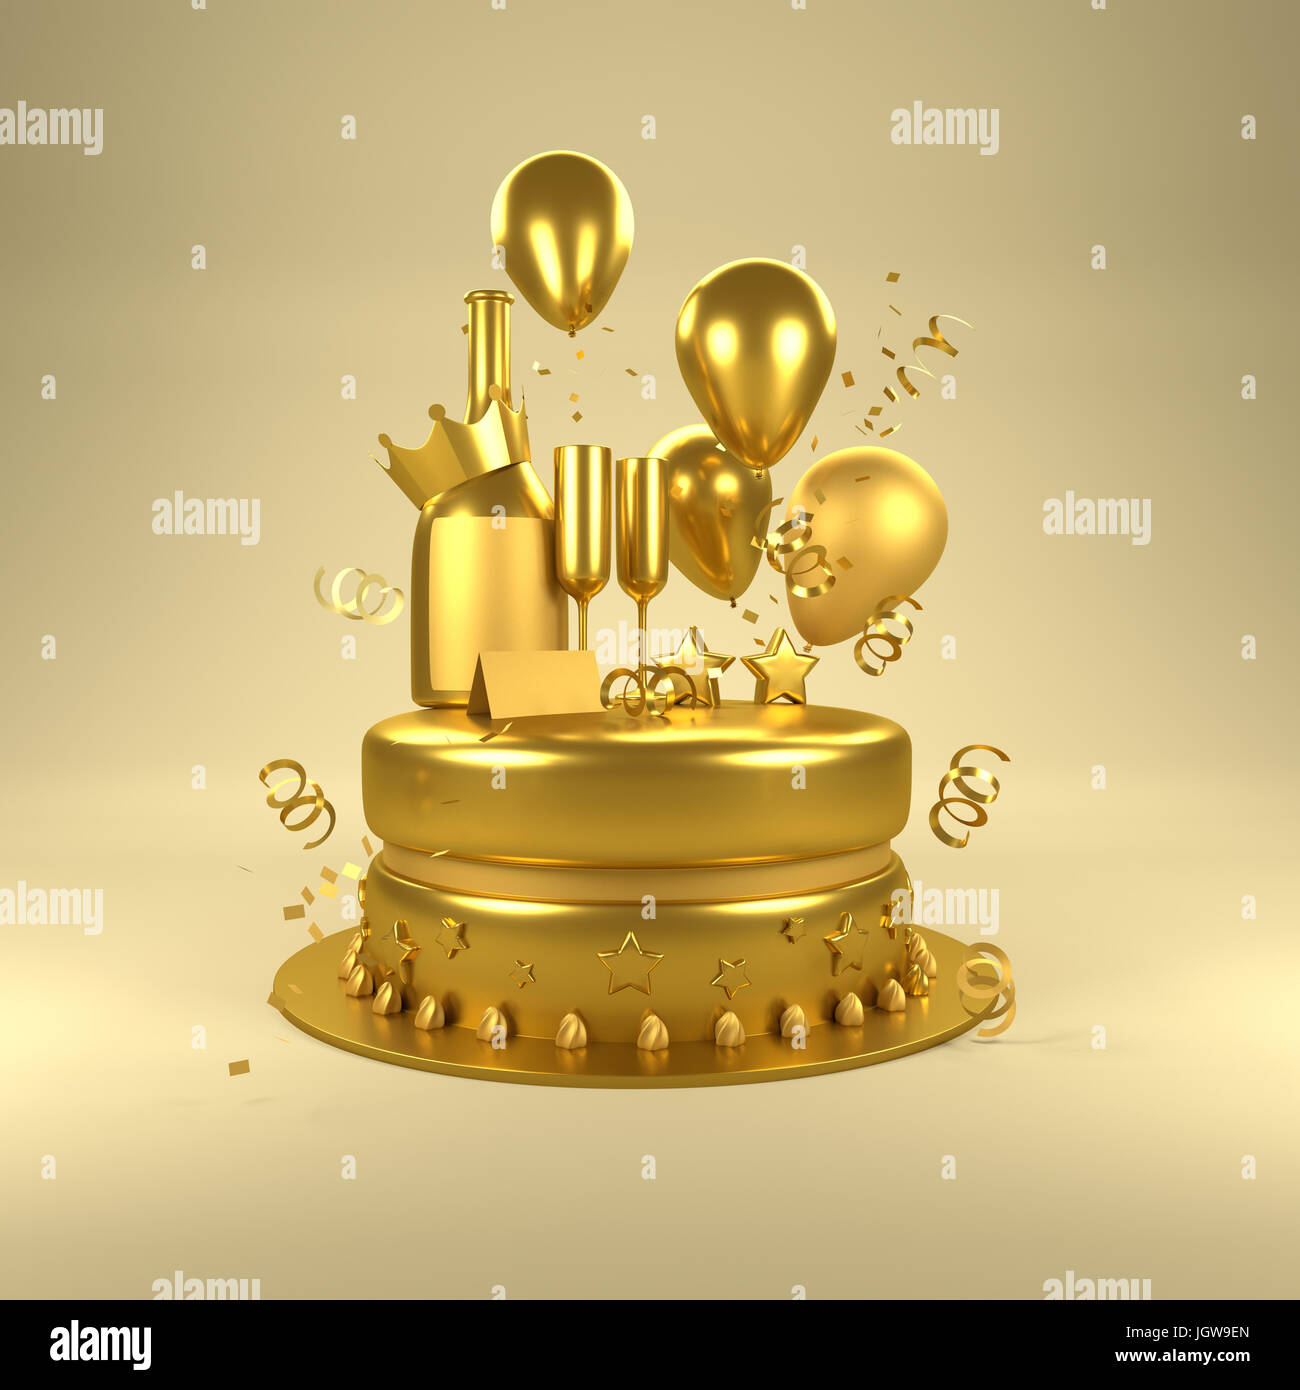 Anniversaire surprise d'or. Des fêtes d'anniversaire avec des ballons d'or, l'or des verres et bouteille de champagne et un gâteau. 3D illustration. Banque D'Images